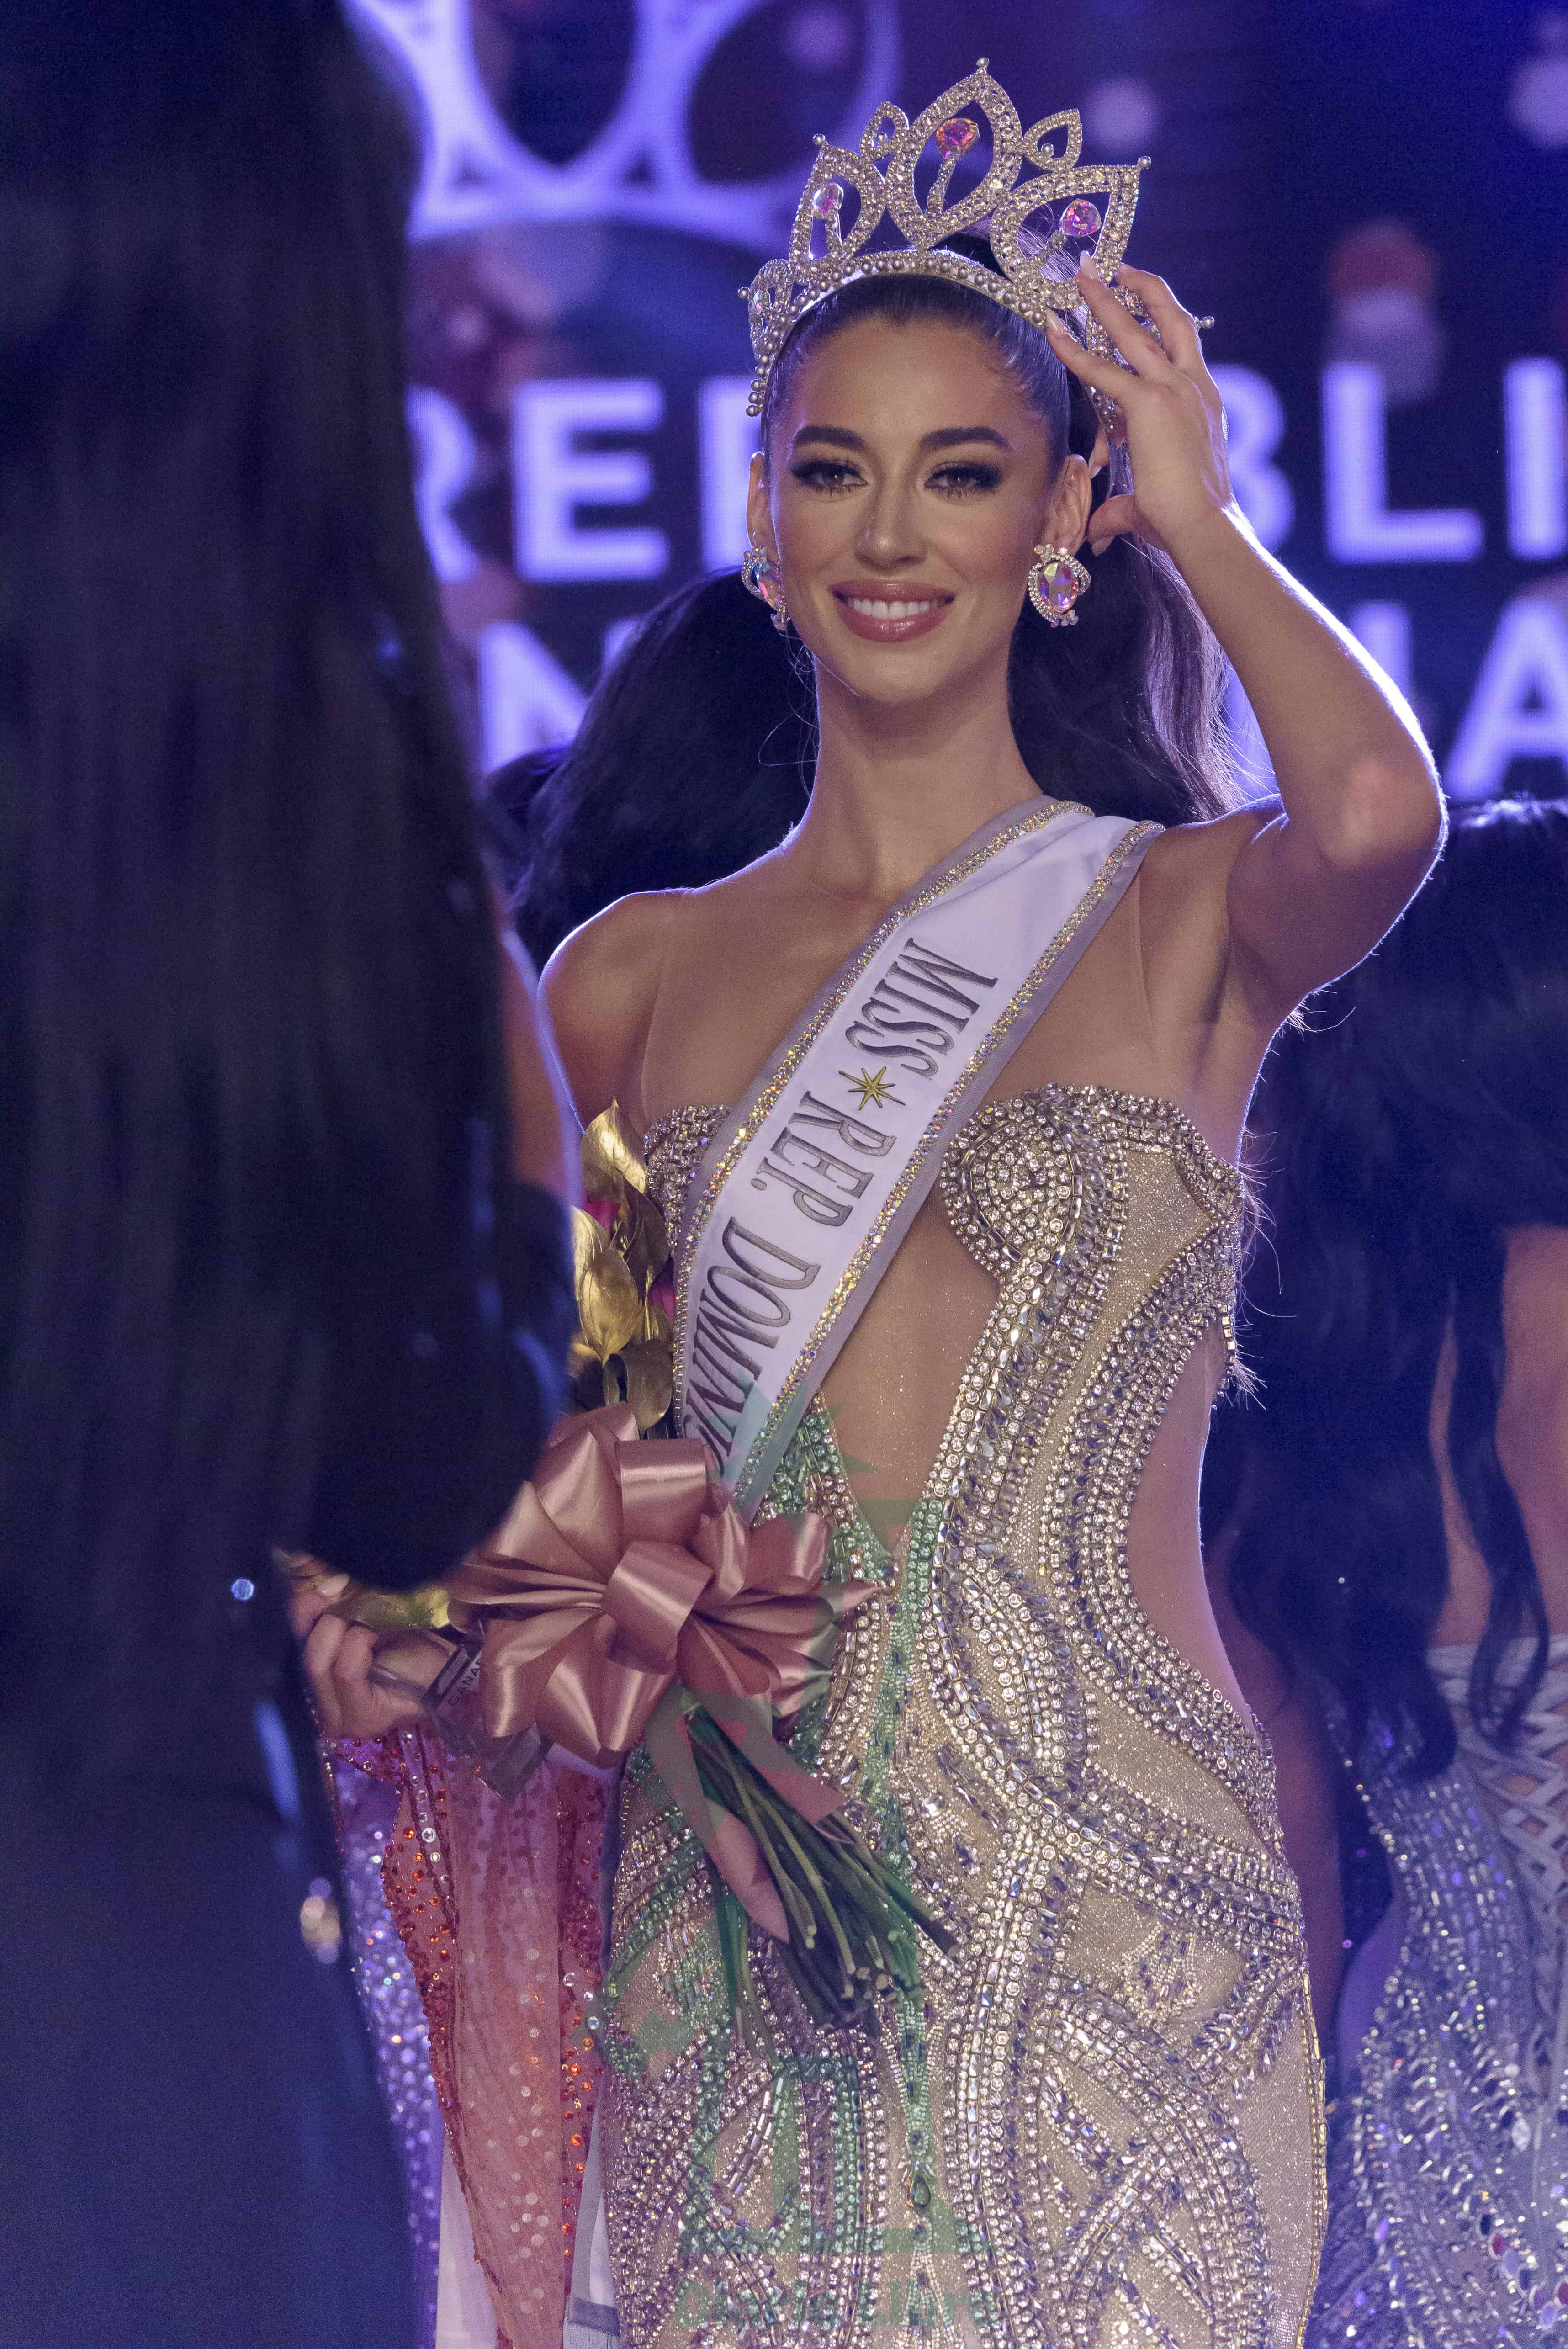 Una sonriente nueva representante de Quisqueya ante el próximo certamen del Miss Universo.